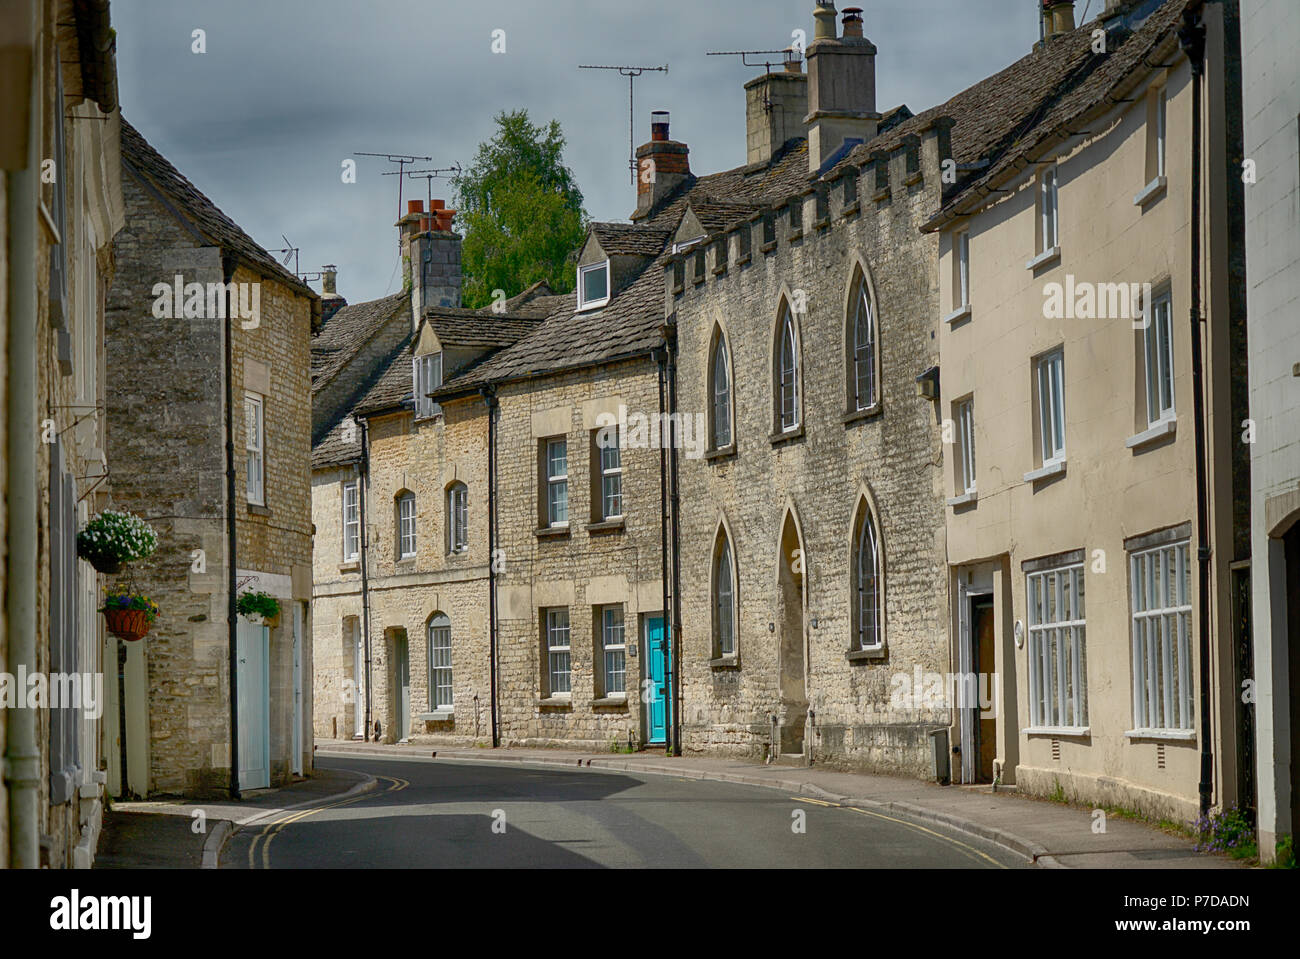 Ruelles de la village de Cotswold Minchinhampton, Gloucestershire, Royaume-Uni Banque D'Images